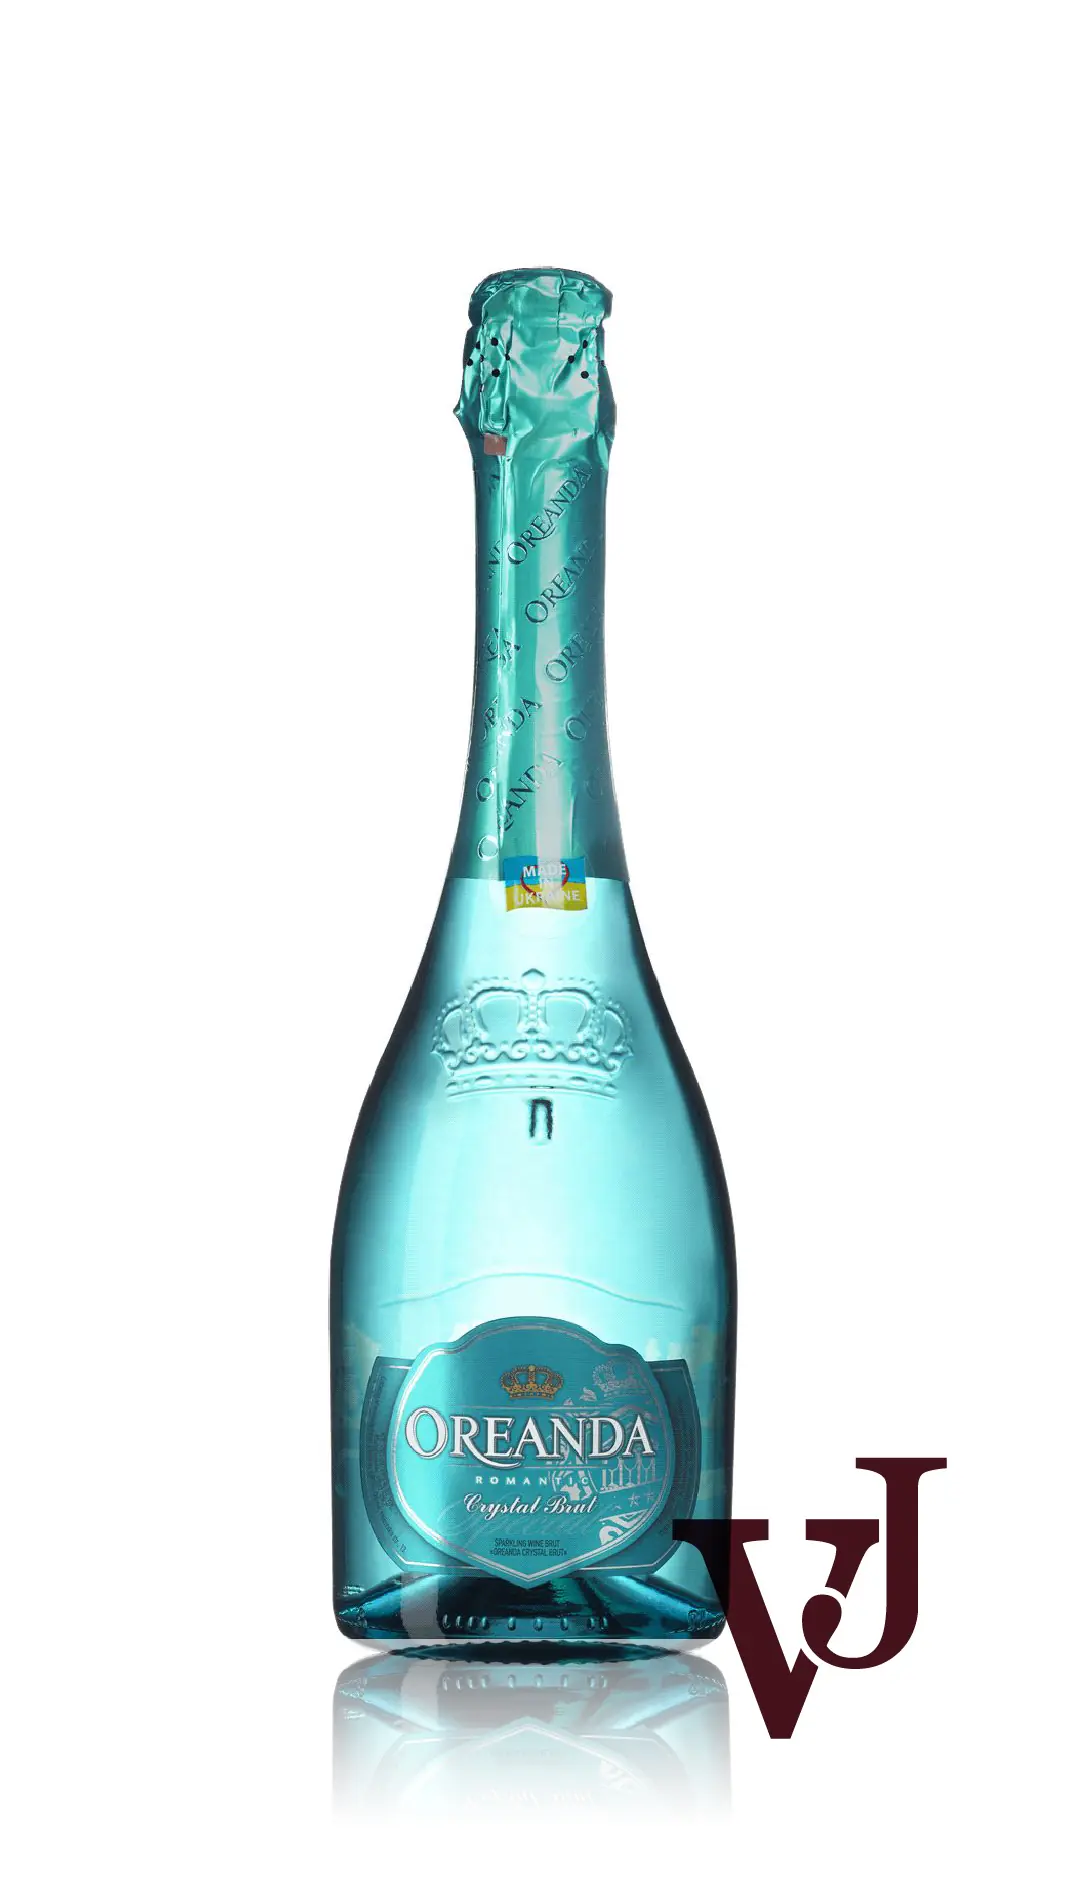 Mousserande Vin - Oreanda Crystal Brut artikel nummer 5895901 från producenten Odesa Brandy Fabrik AB från Ukraina. - Vinjournalen.se